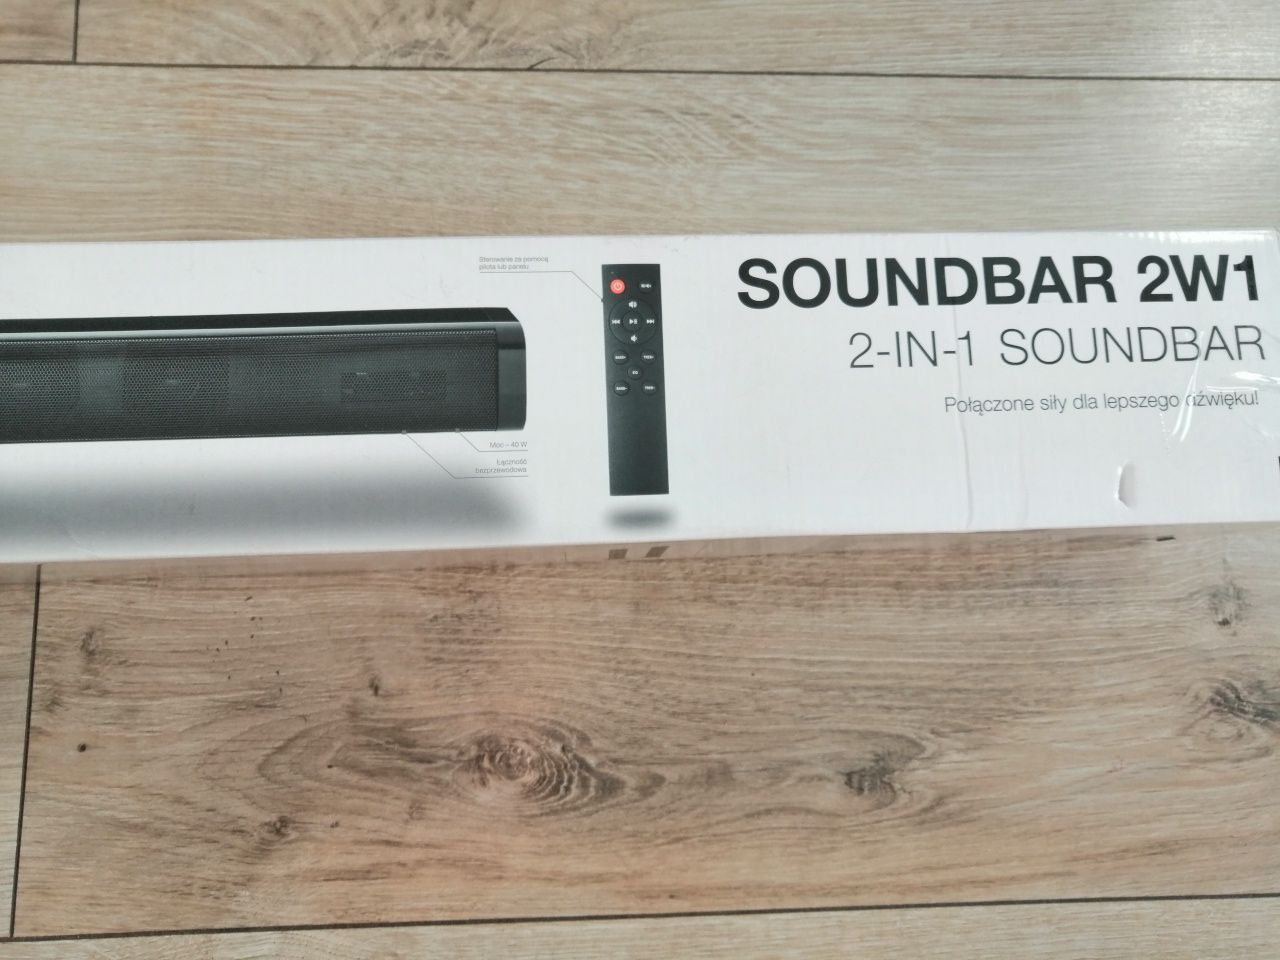 Soundbar 2w1 sterowanie z pilota bluetooth 5.0 2 głośniki